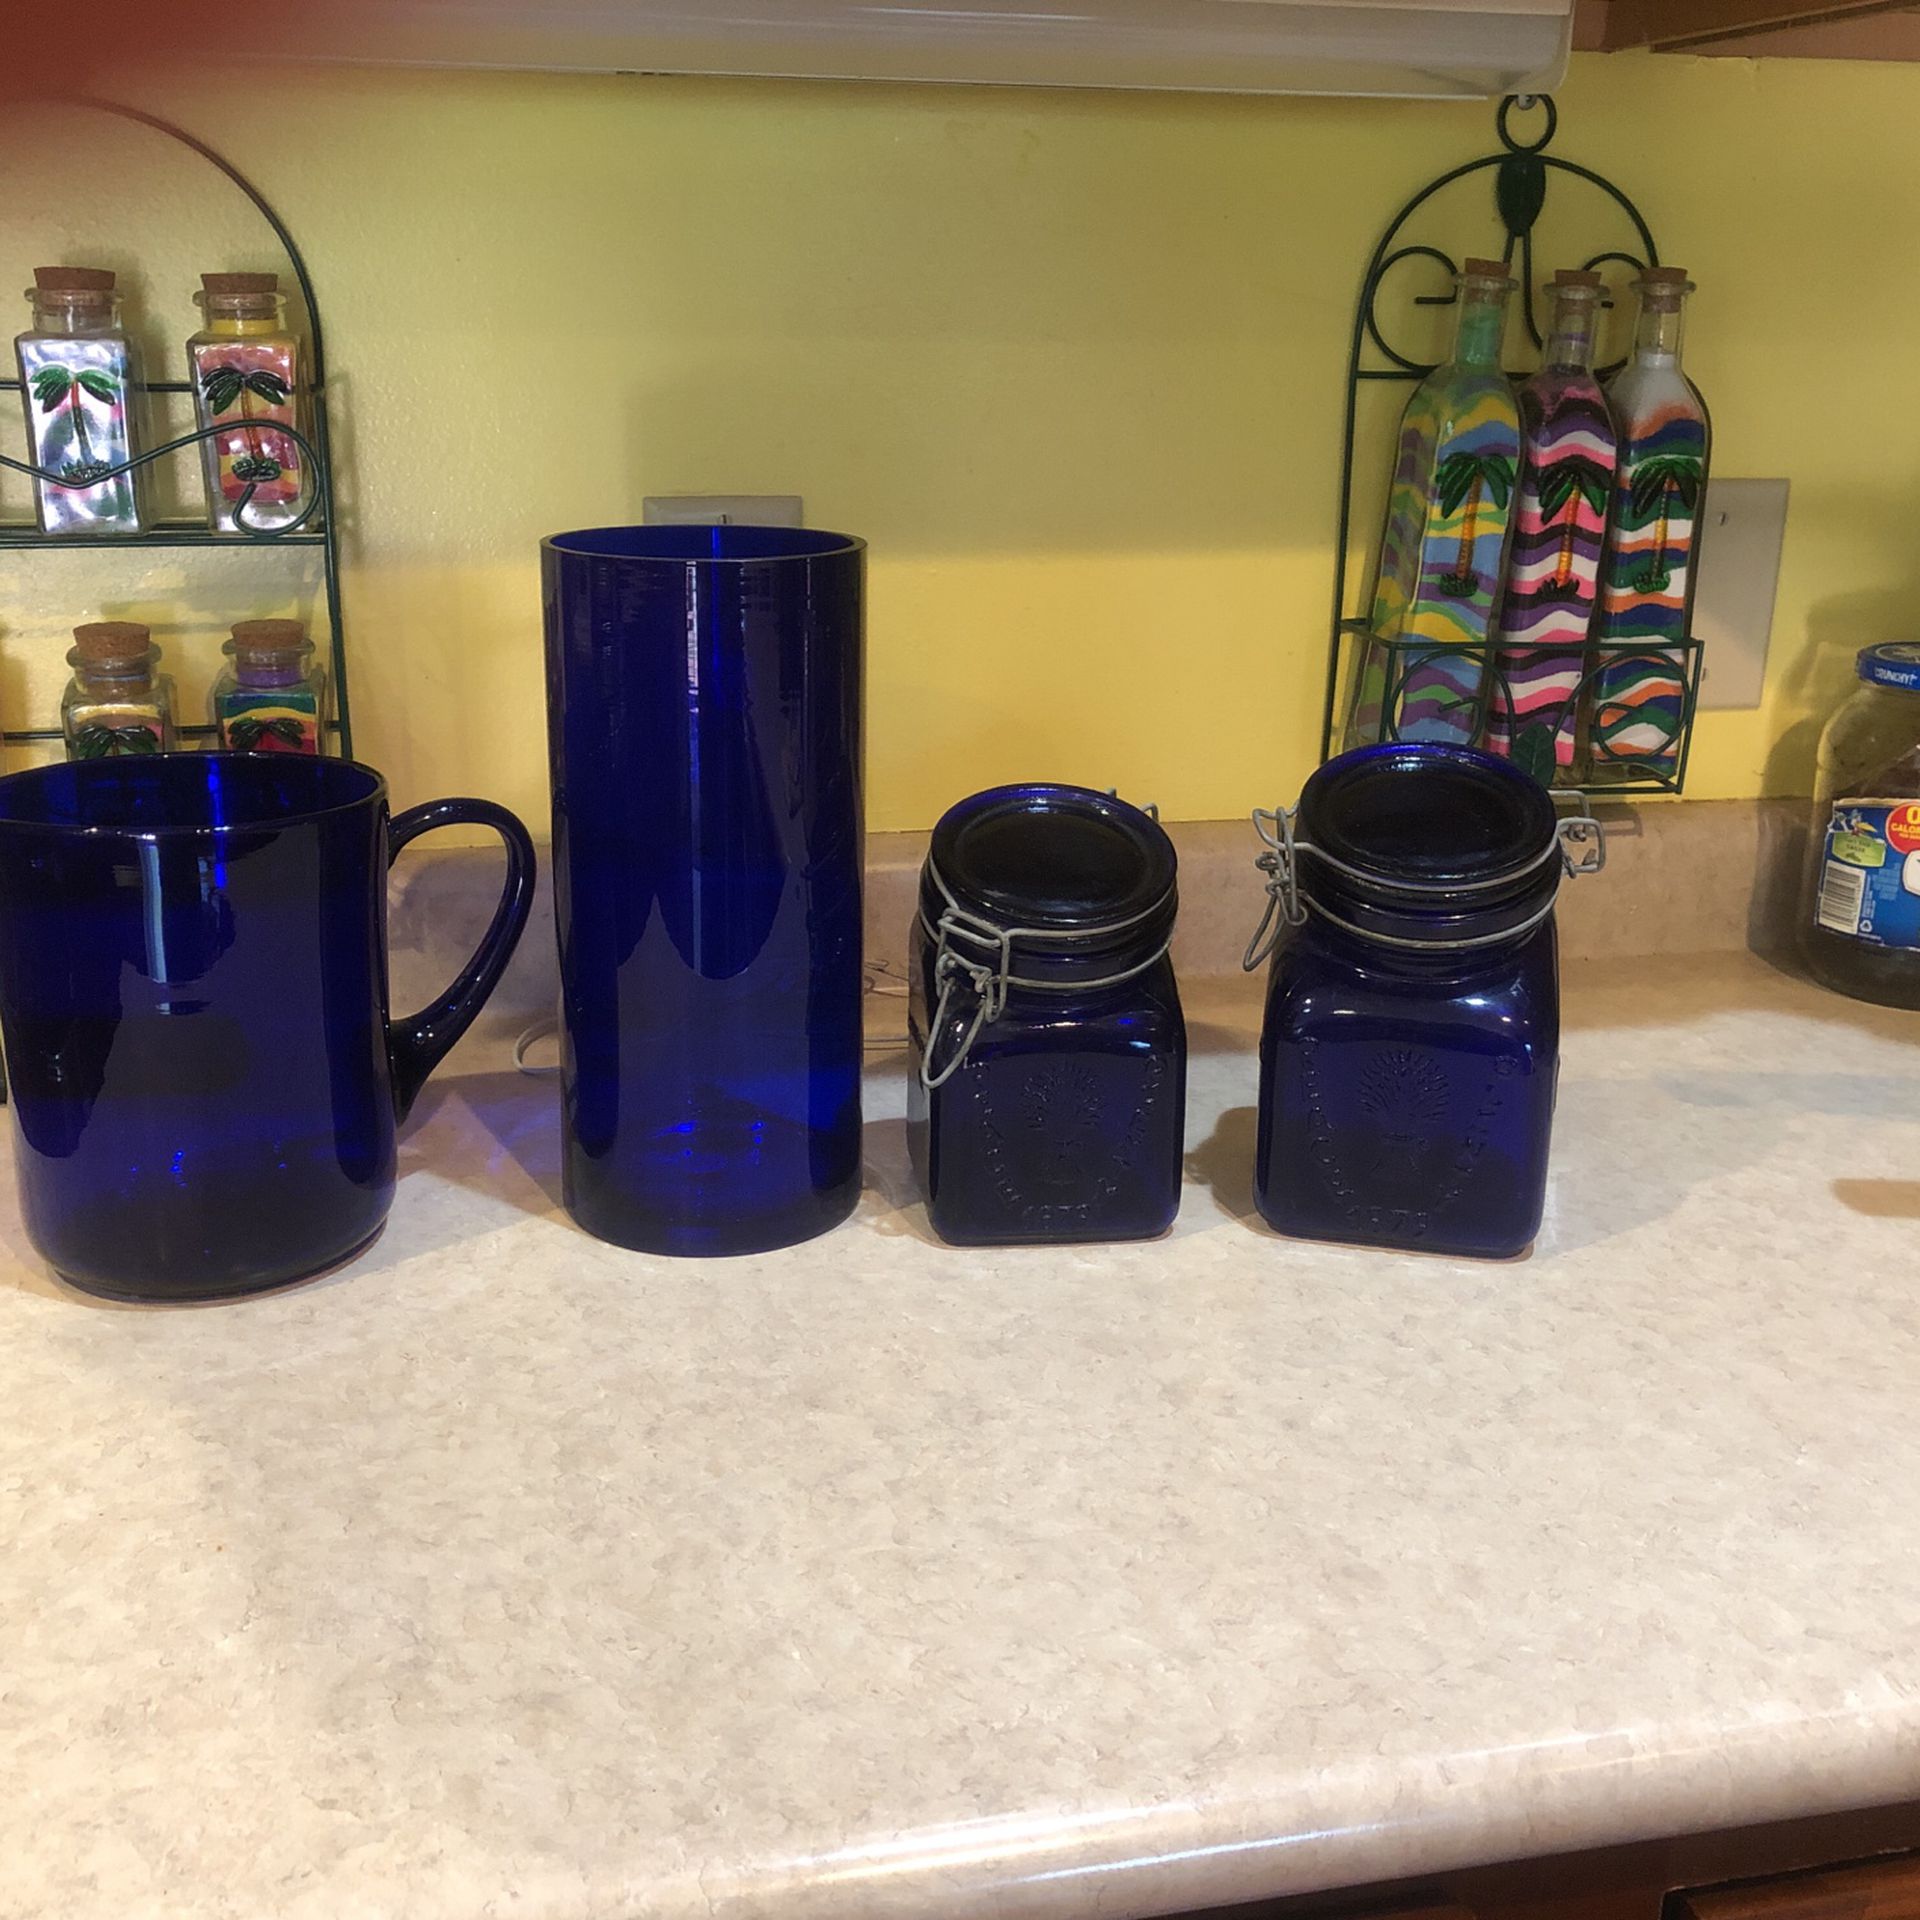  4  BeautifulbCobalt Blue Pieces - 1 Pitcher, 1Vase, 2 Vintage Mason Jars